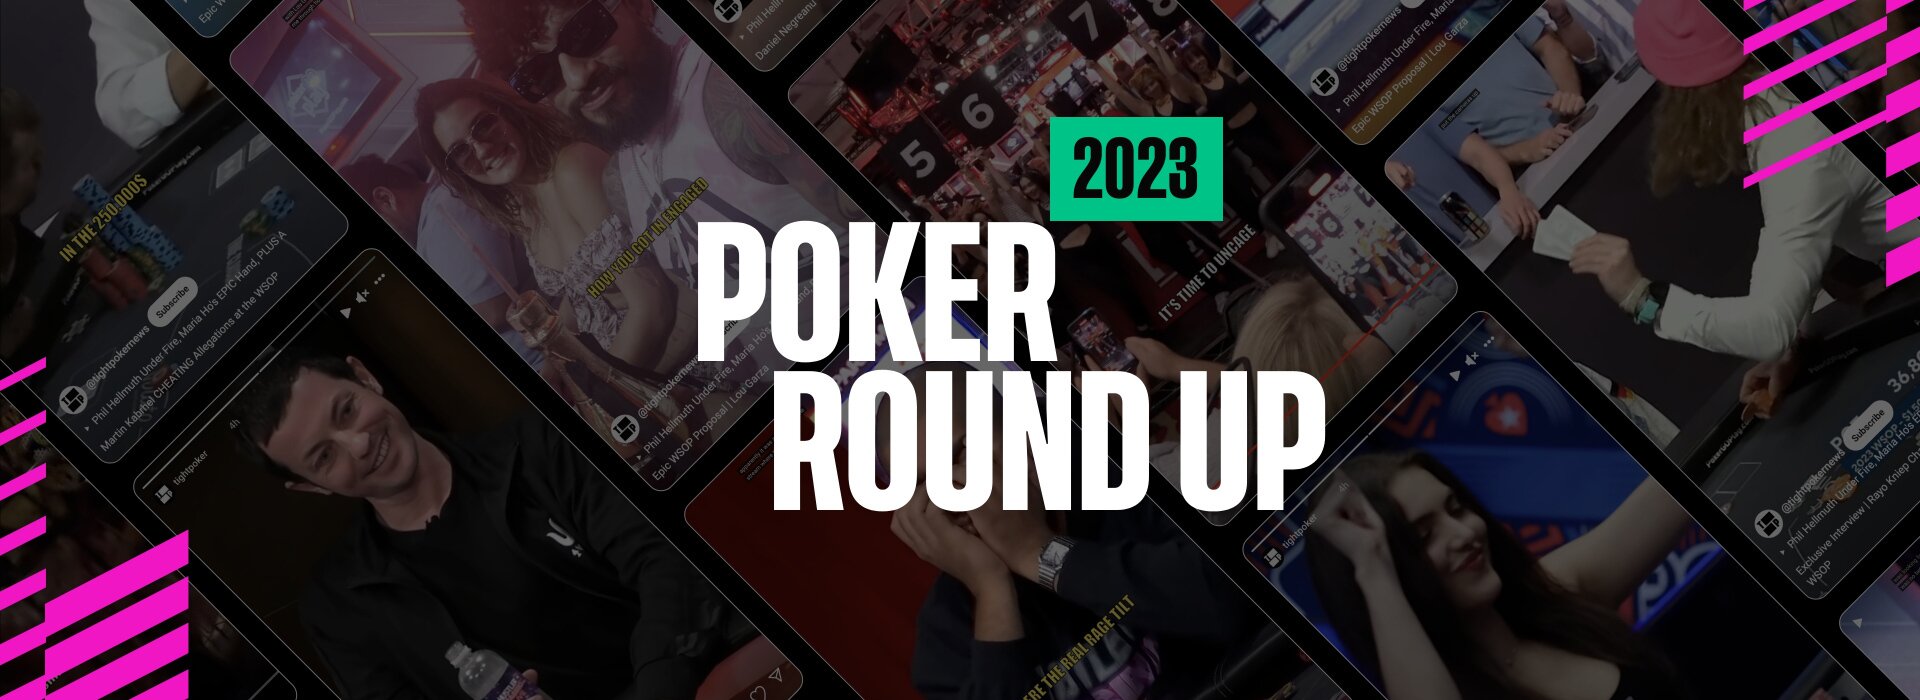 Poker Round Up 2023